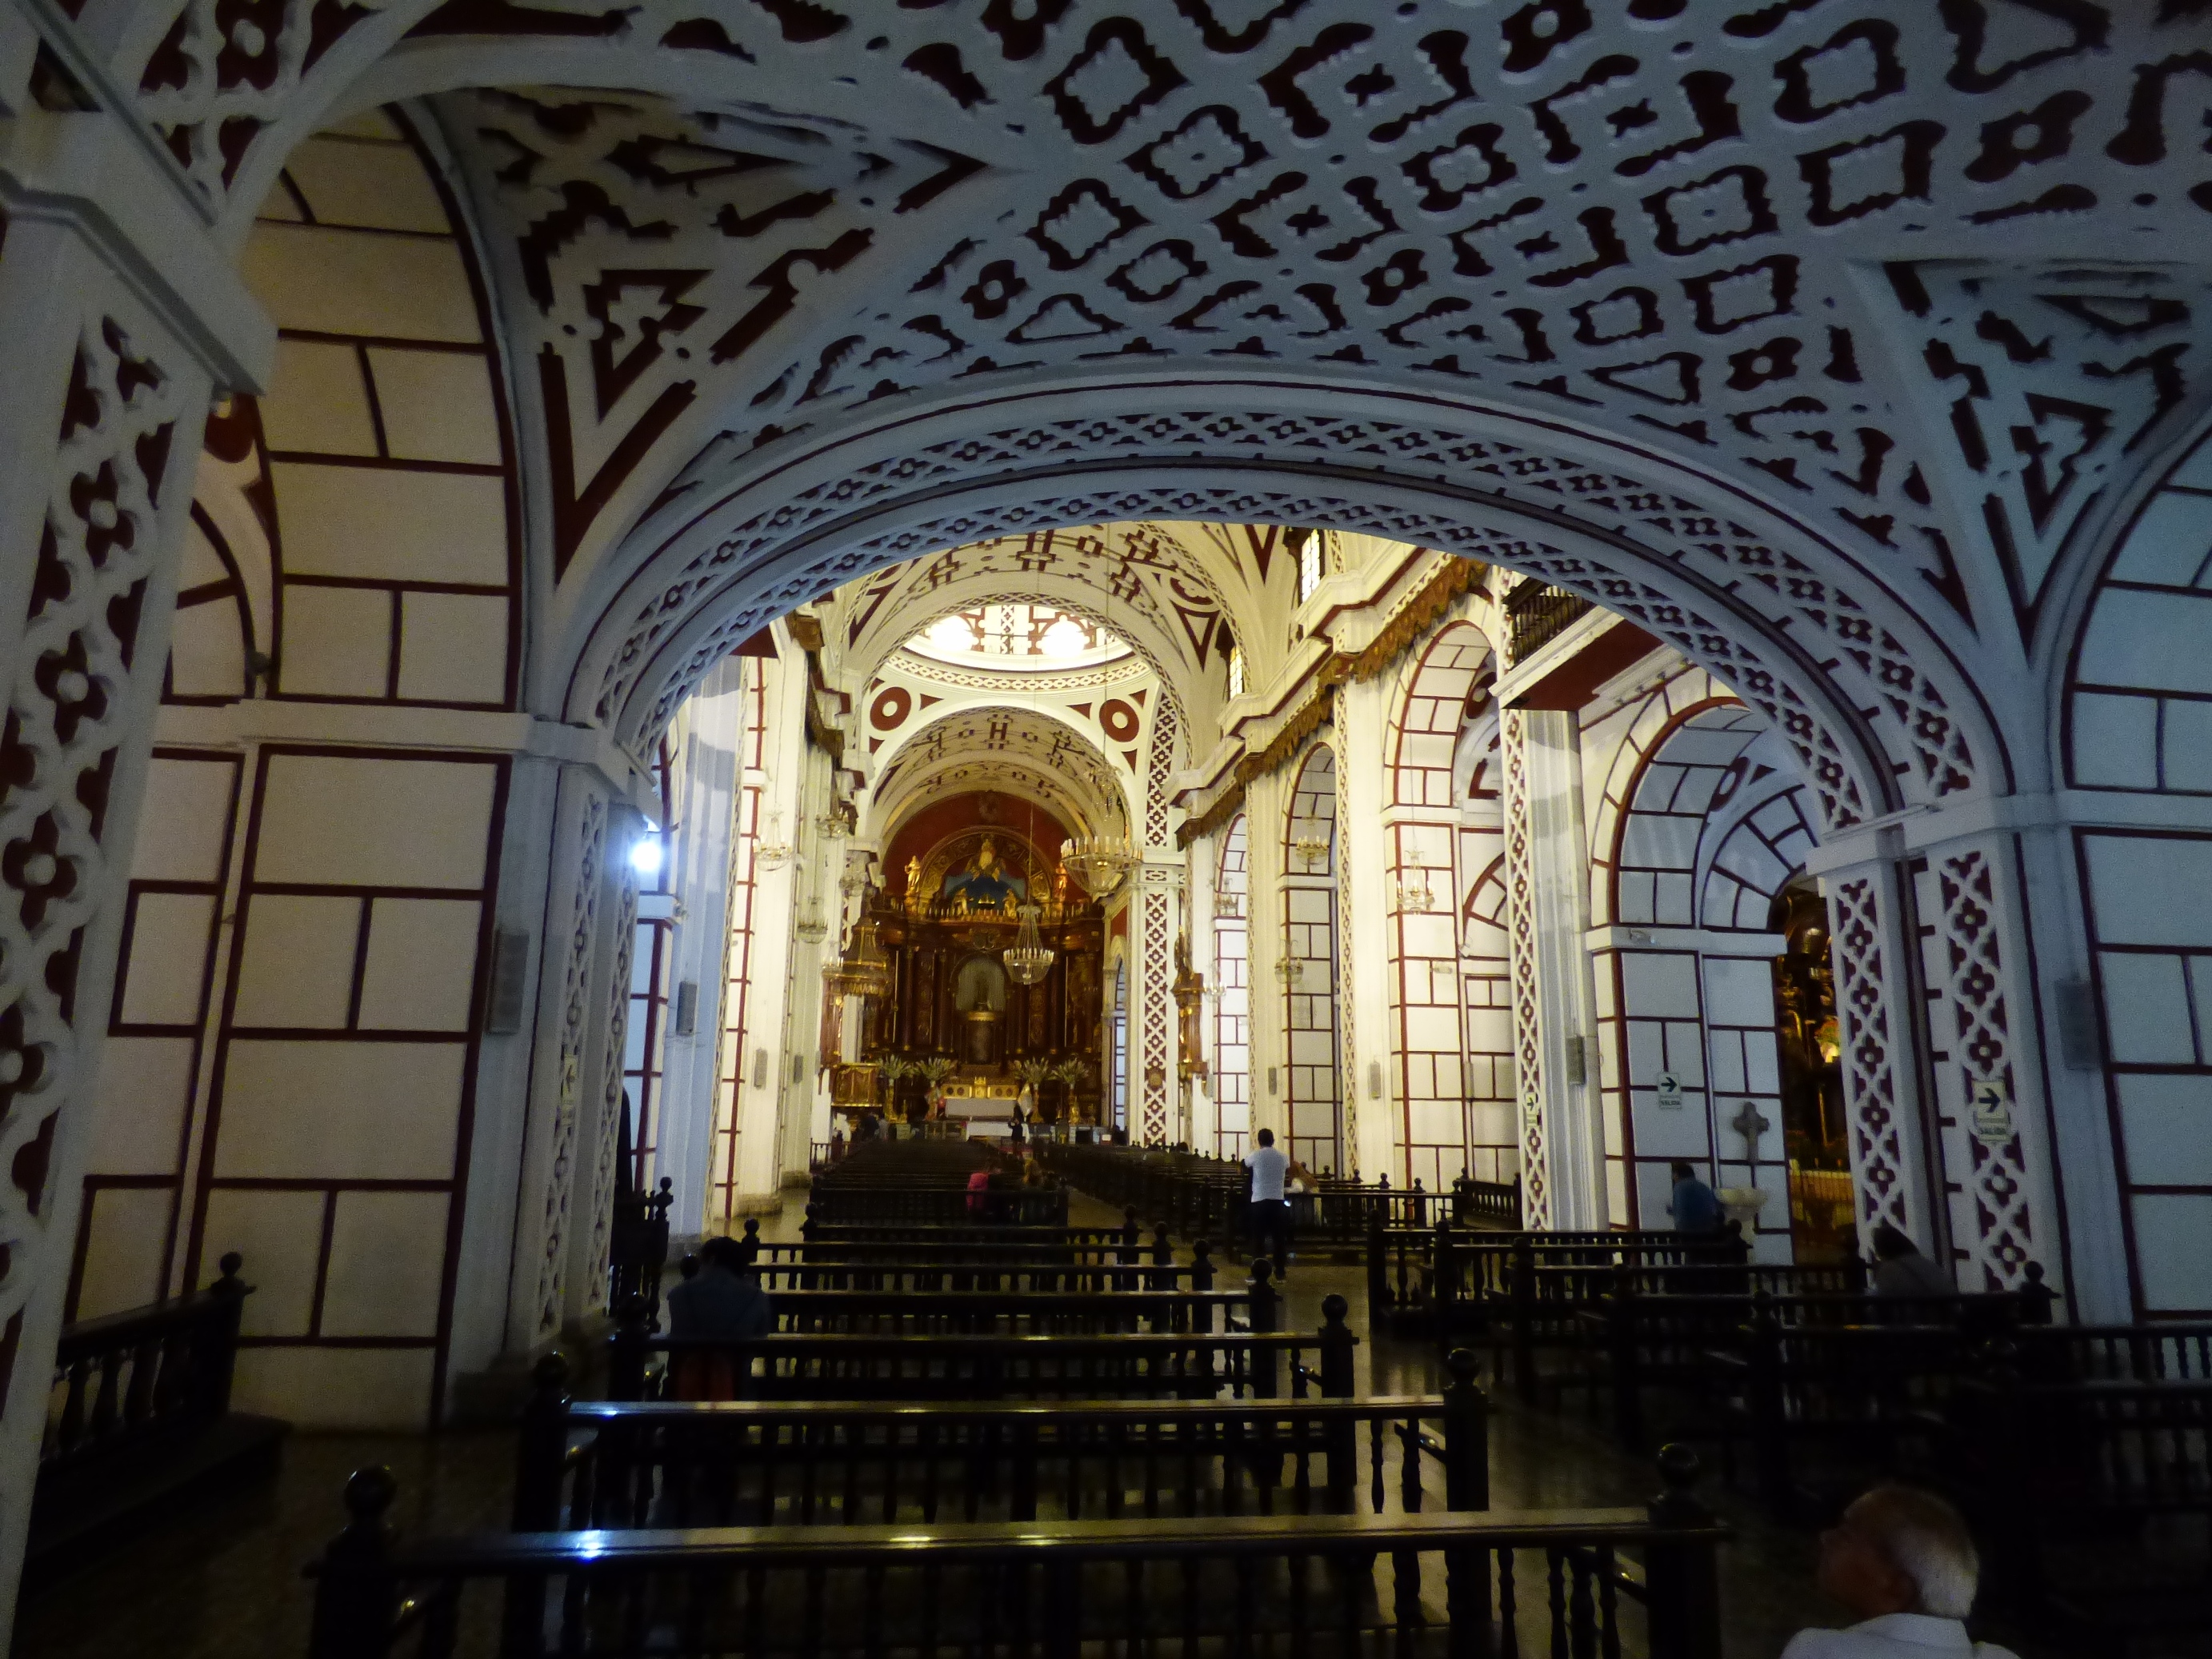 Mivel a spanyol alkirálynak ez a templom volt a kedvenc imádságos helye, ezért a templom bőkezű adományokat kapott Peru ezüst- és aranybányáiból.